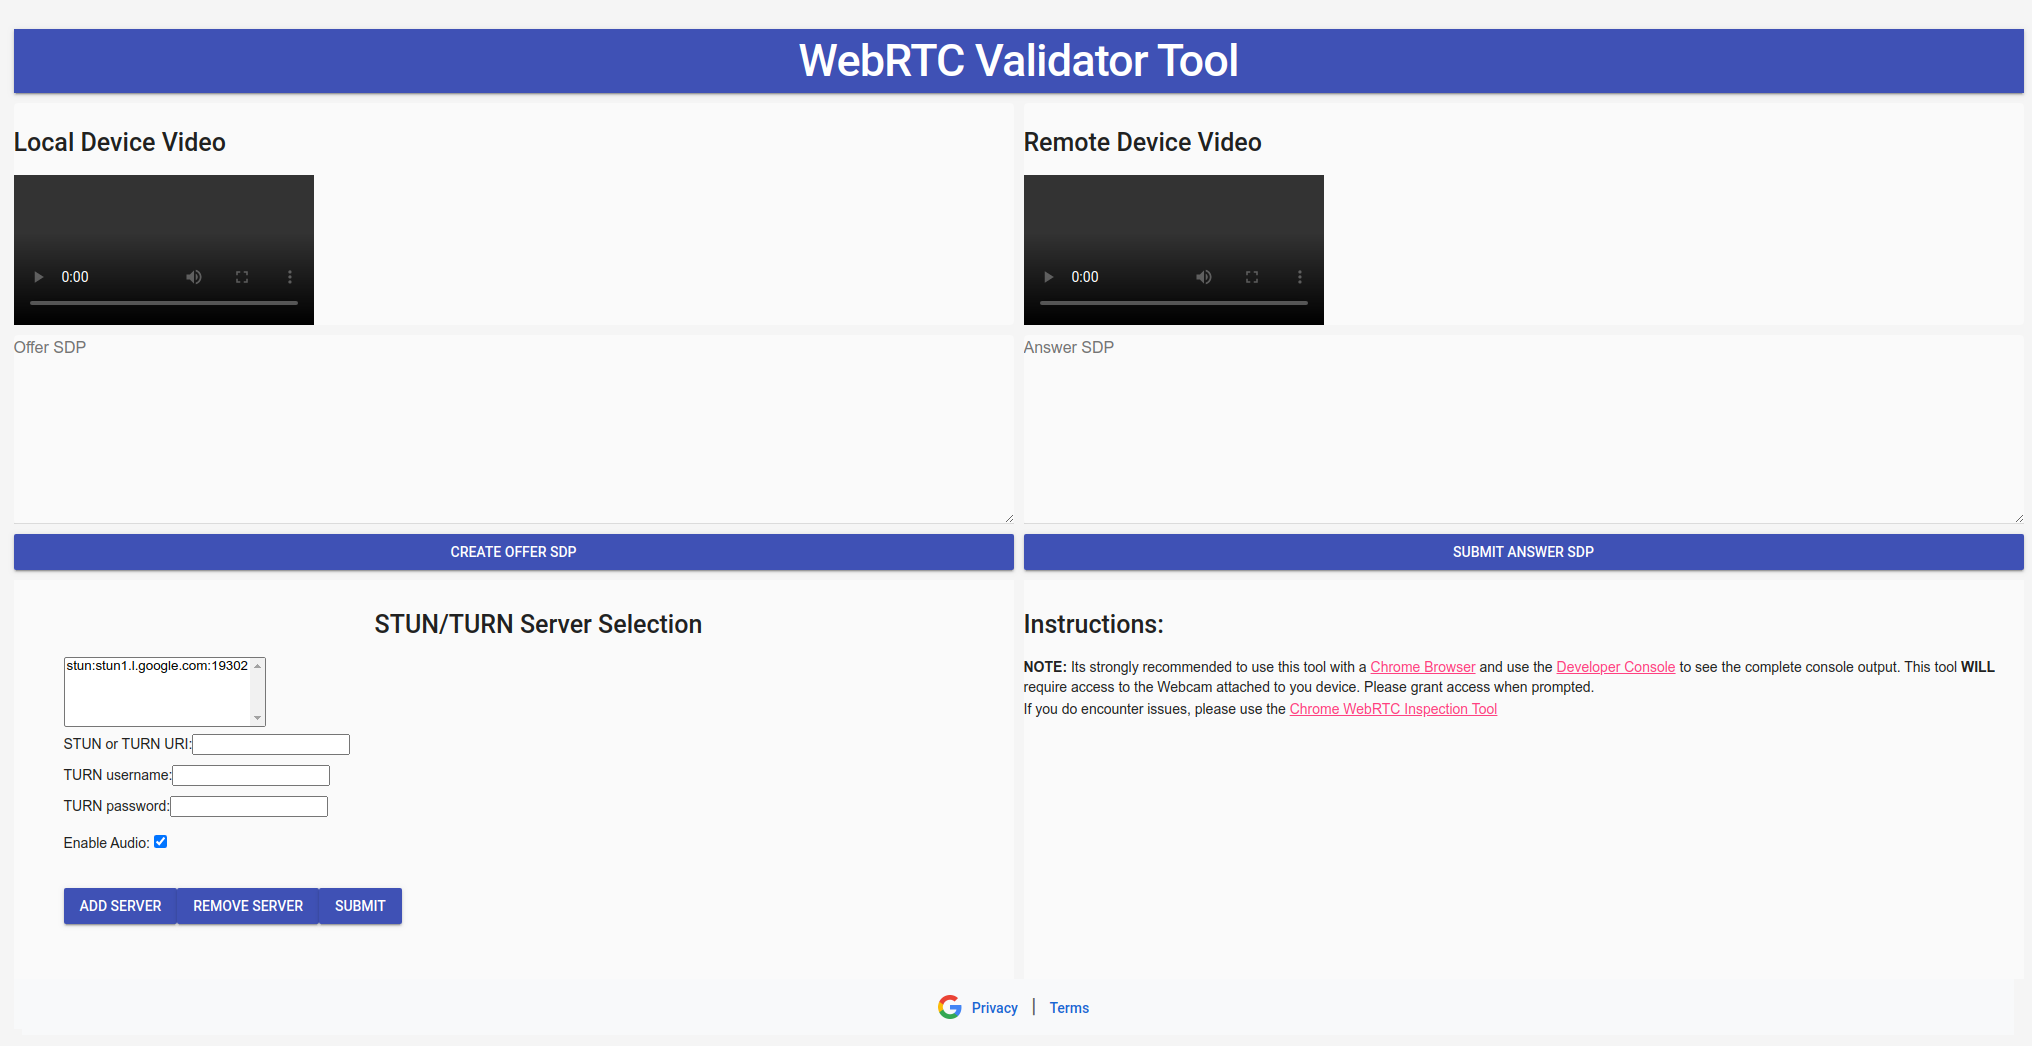 WebRTC वैलिडेटर टूल की खास जानकारी वाली इमेज.